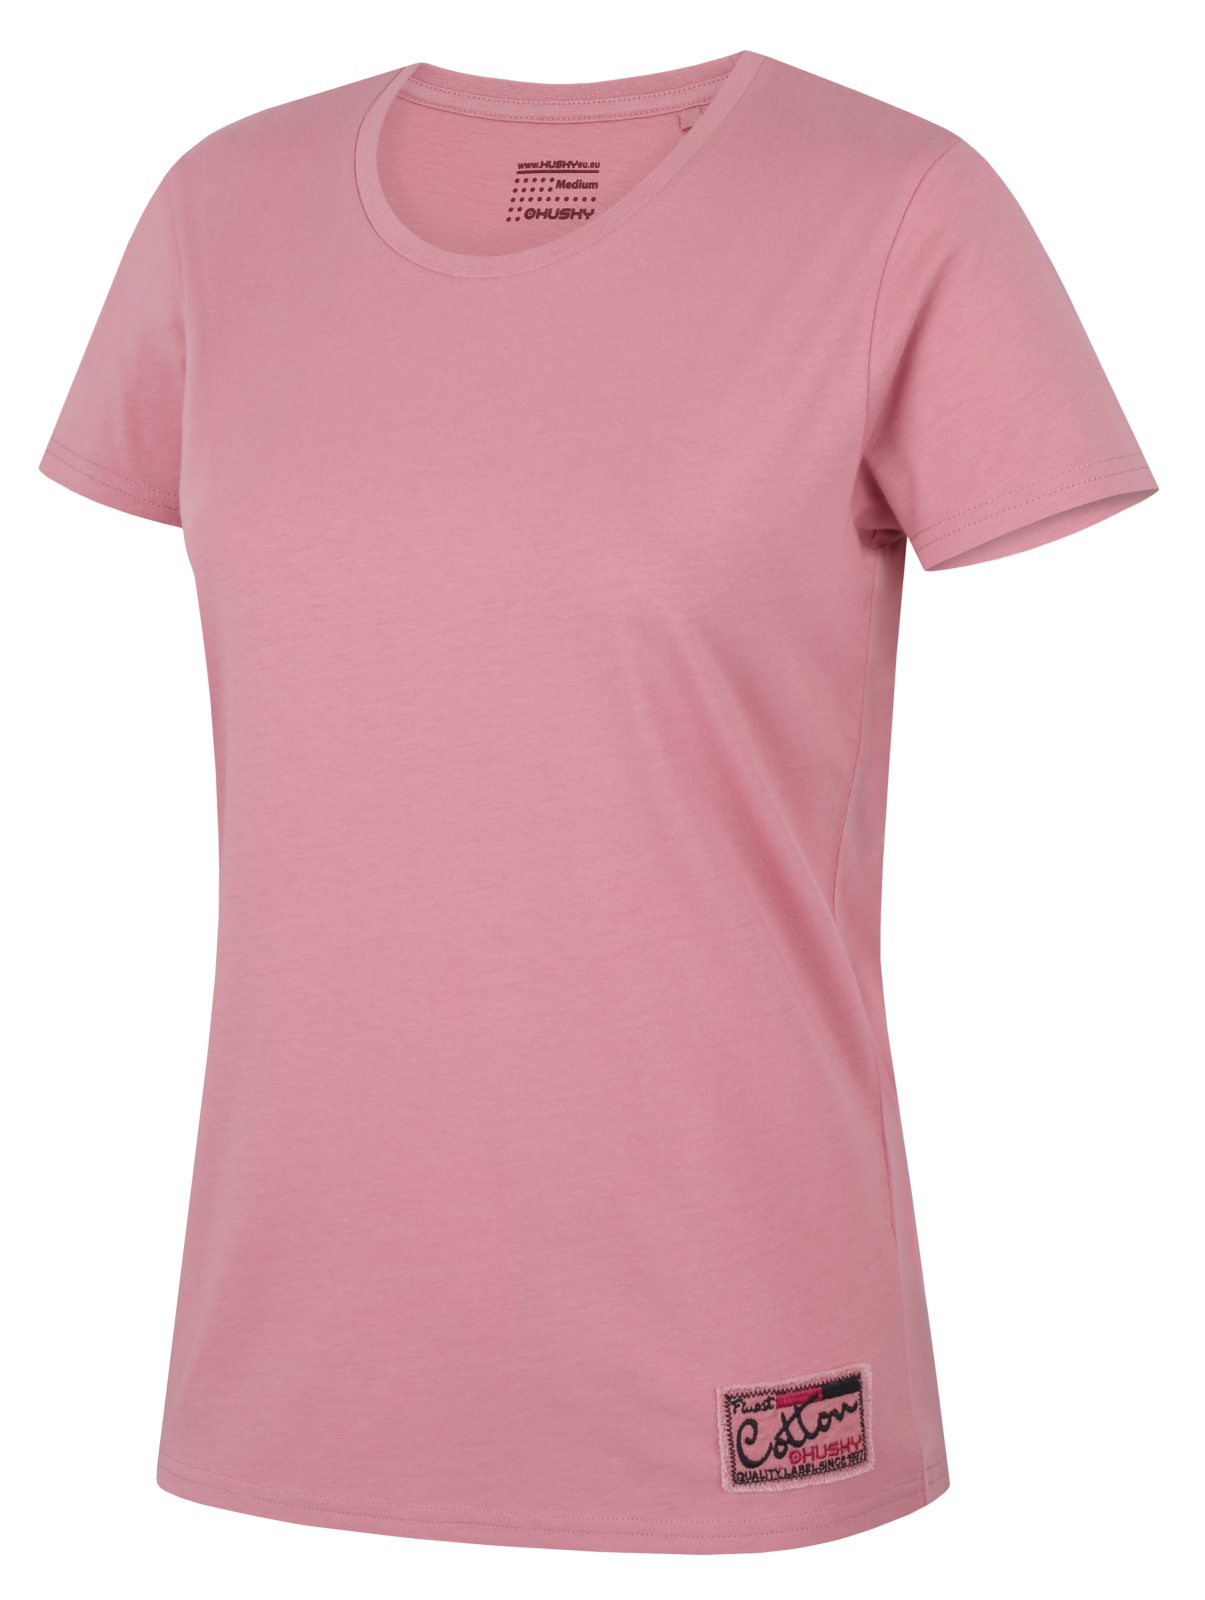 Husky Dámské bavlněné triko Tee Base L pink Velikost: L dámské tričko s krátkým rukávem